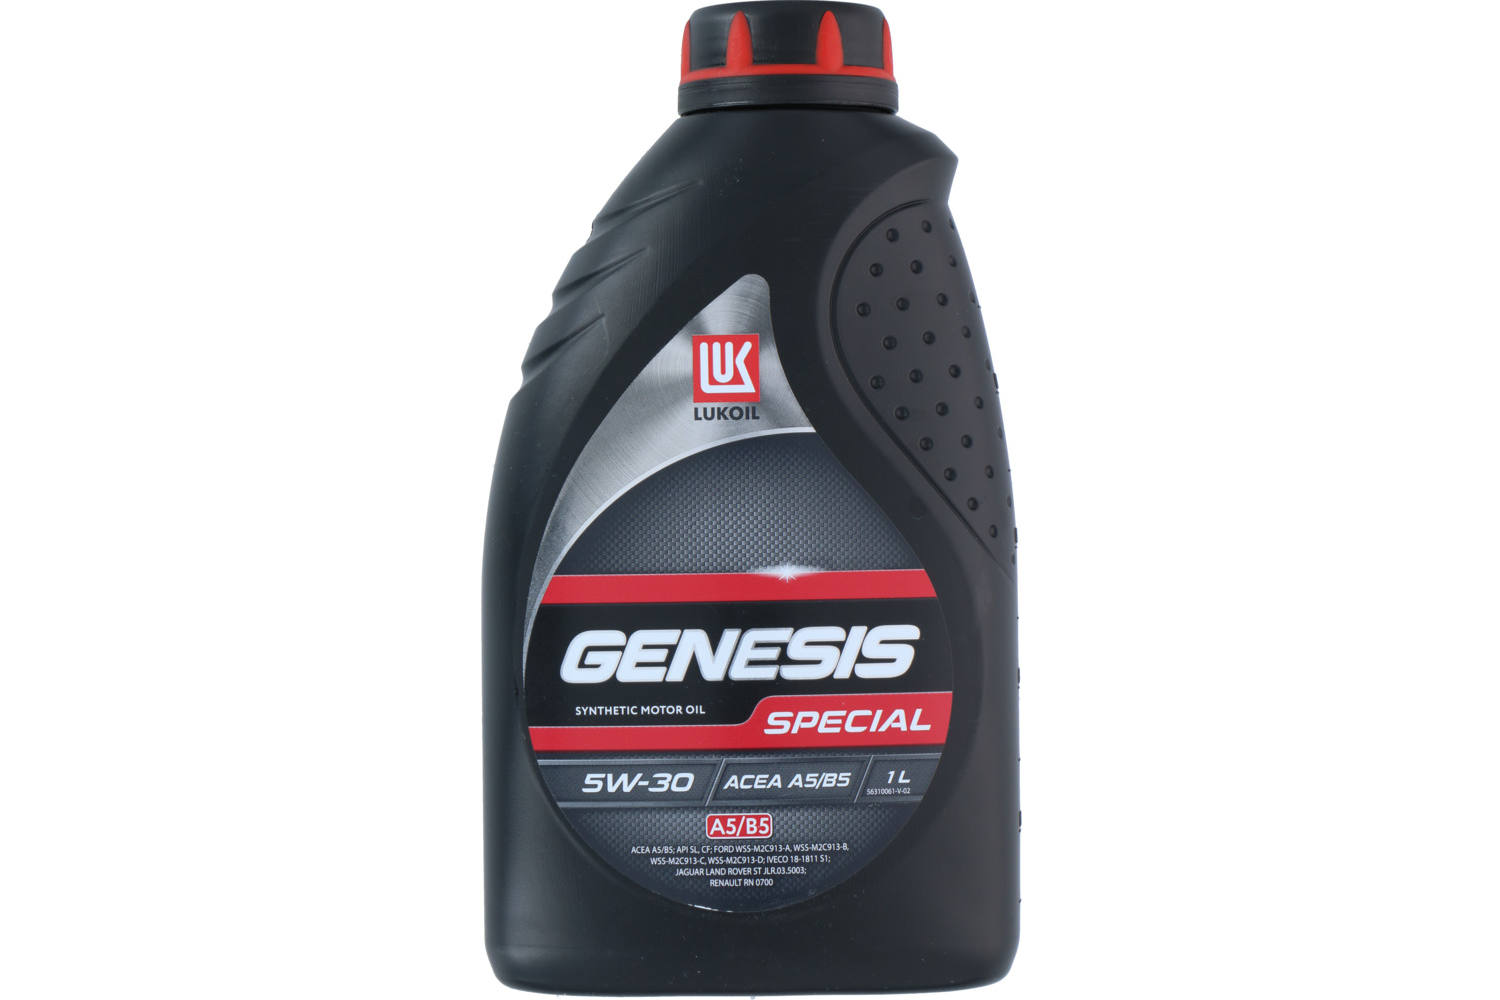 Motorolie, Lukoil Genesis Special synthetic, 5W30 A5/B5, 1l 2